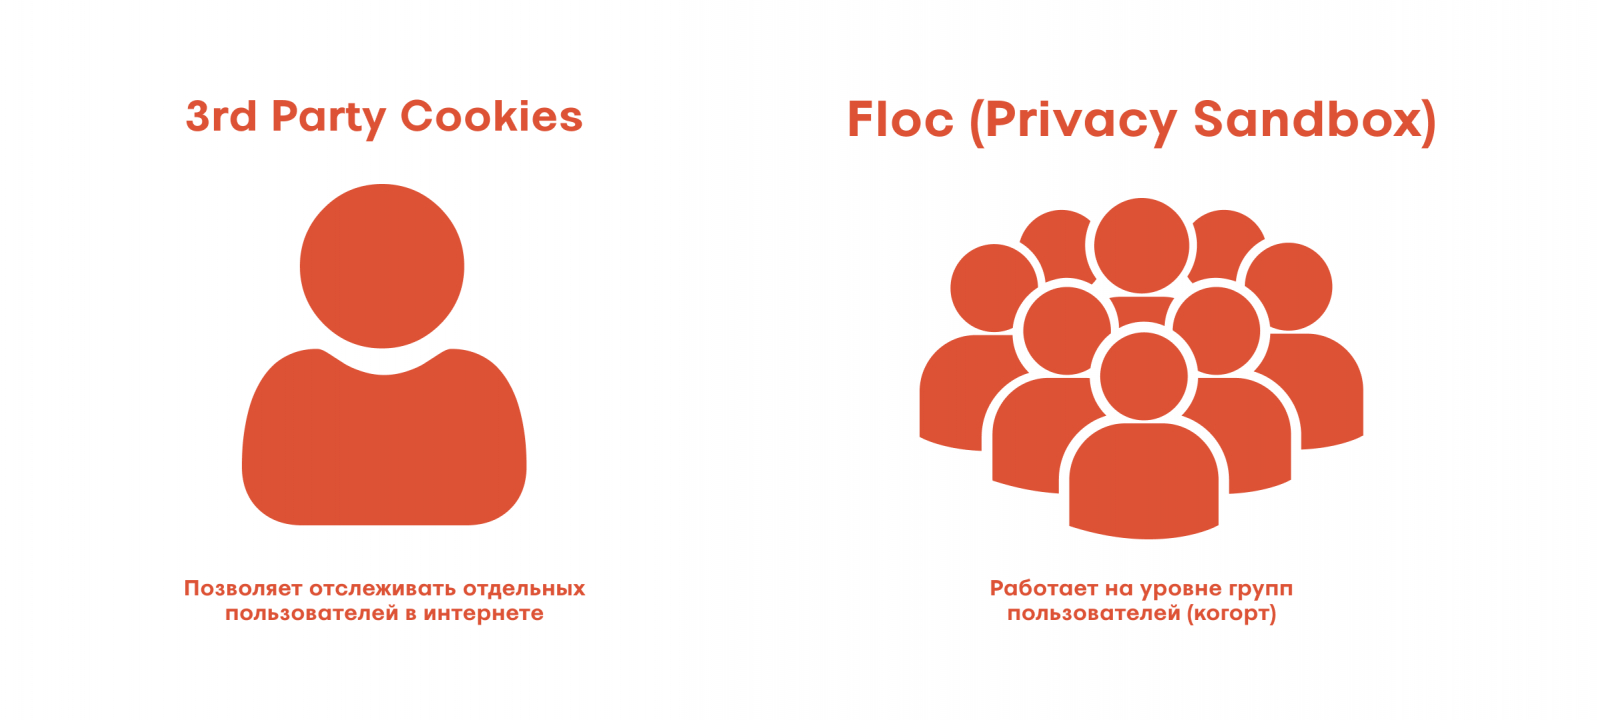 Основное отличие 3rd Party Cookies от Floc (Privacy Sandbox)